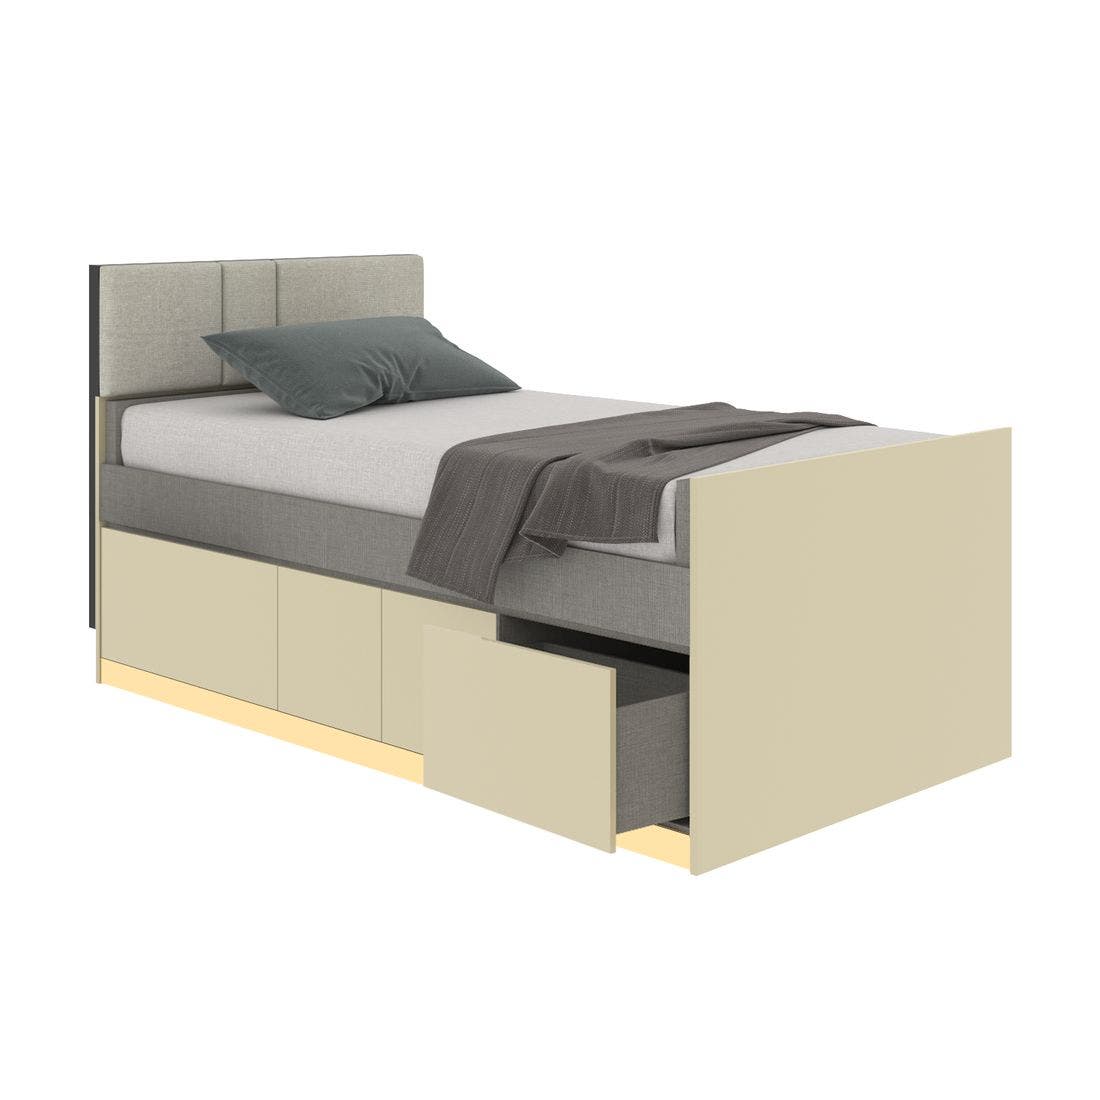 19203267-blisz-furniture-bedroom-furniture-beds-06